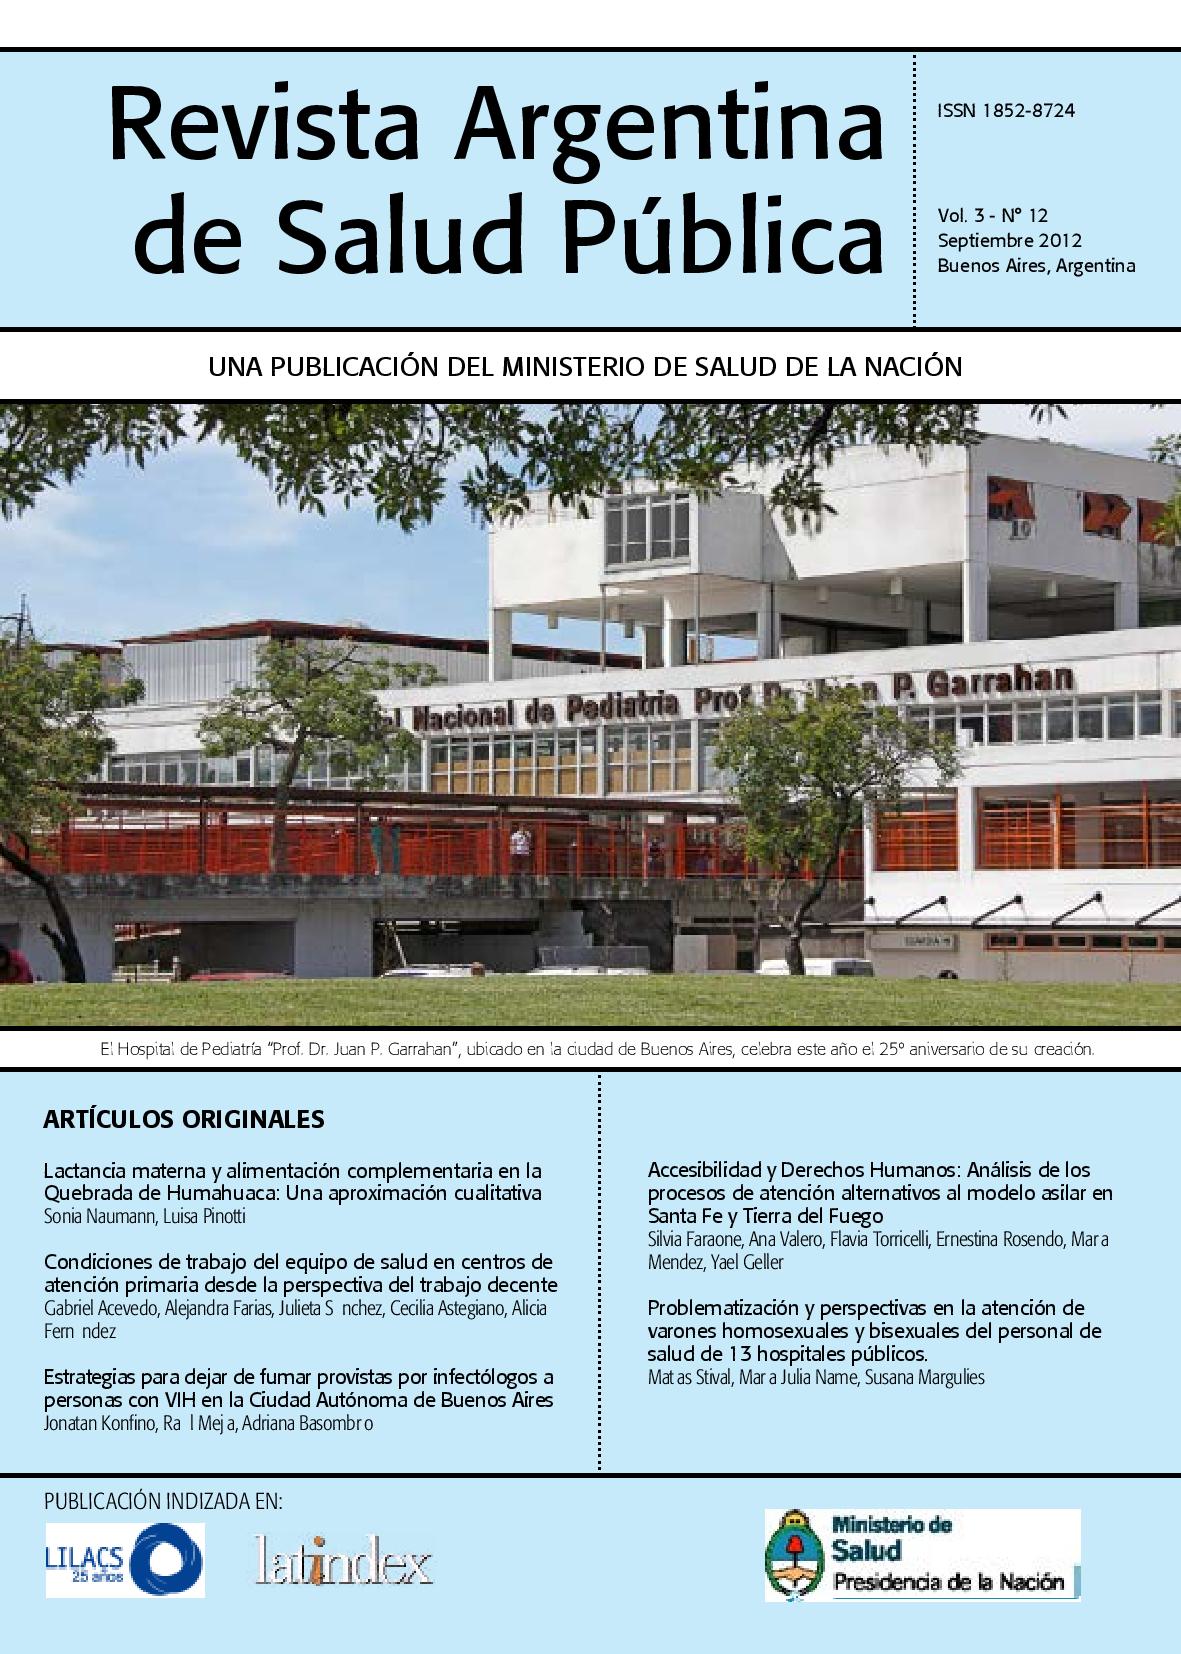 					View Vol. 3 No. 12 (2012): Revista Argentina de Salud Pública
				